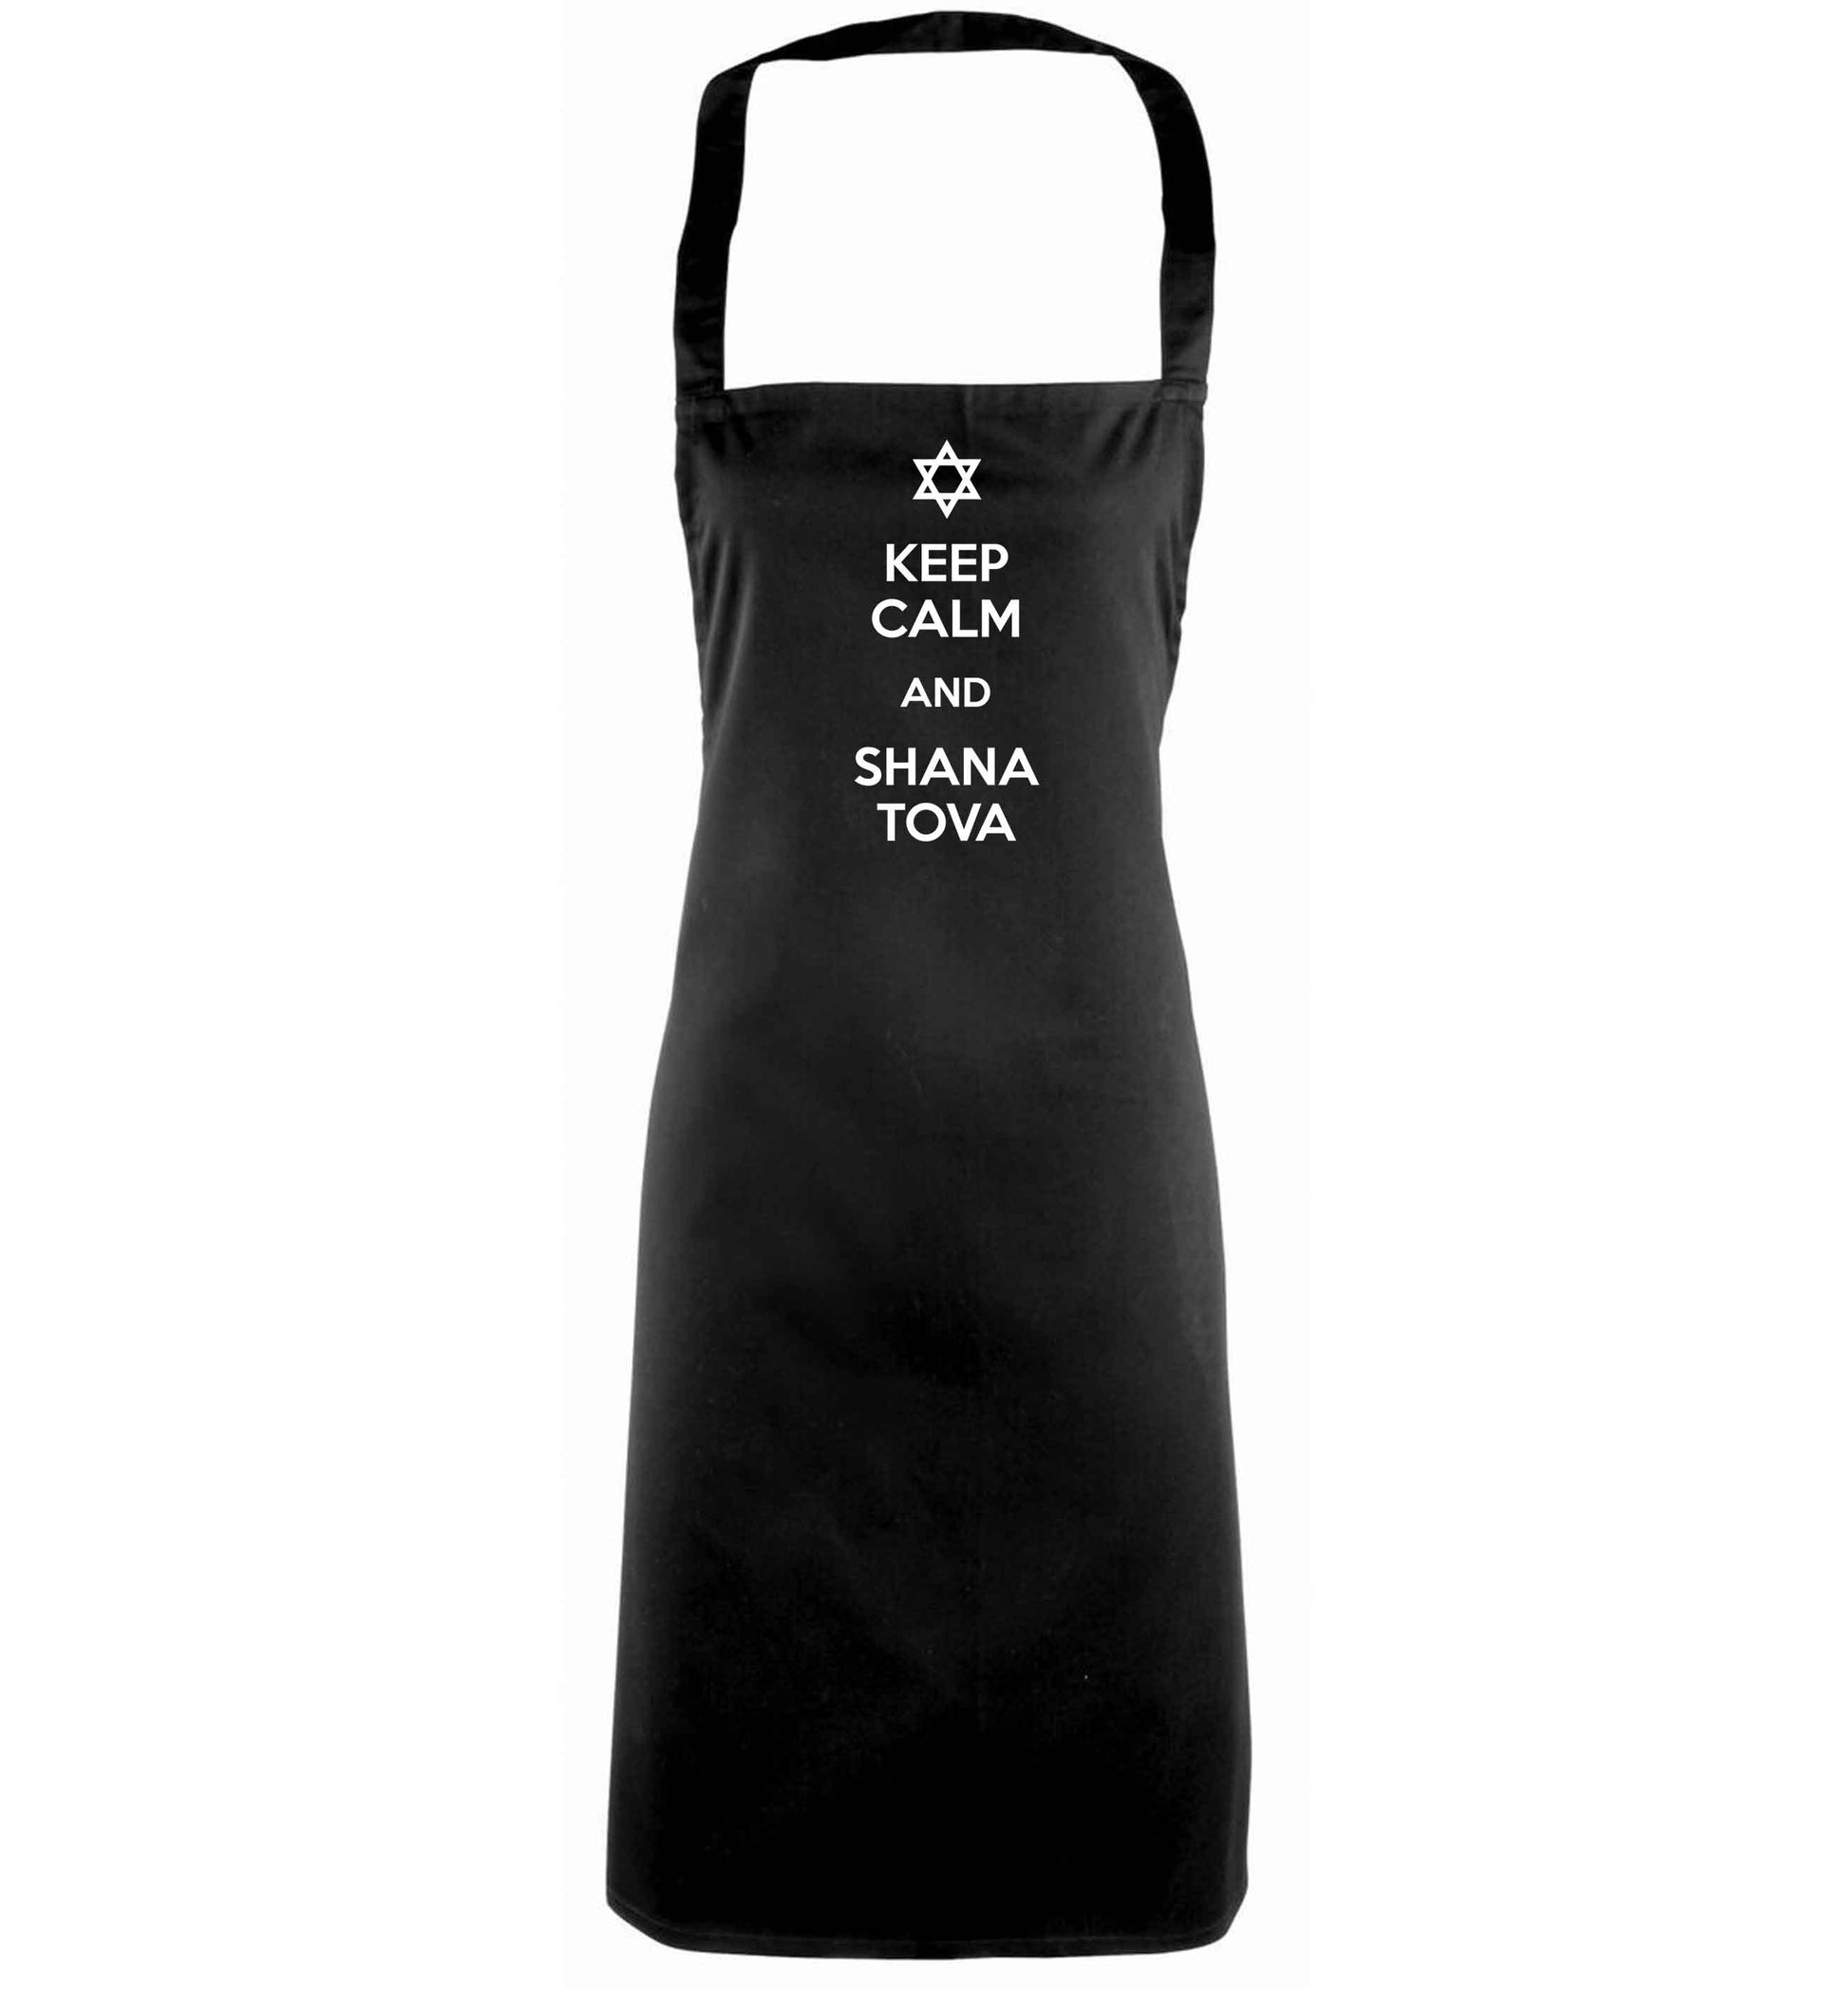 Keep calm and shana tova black apron